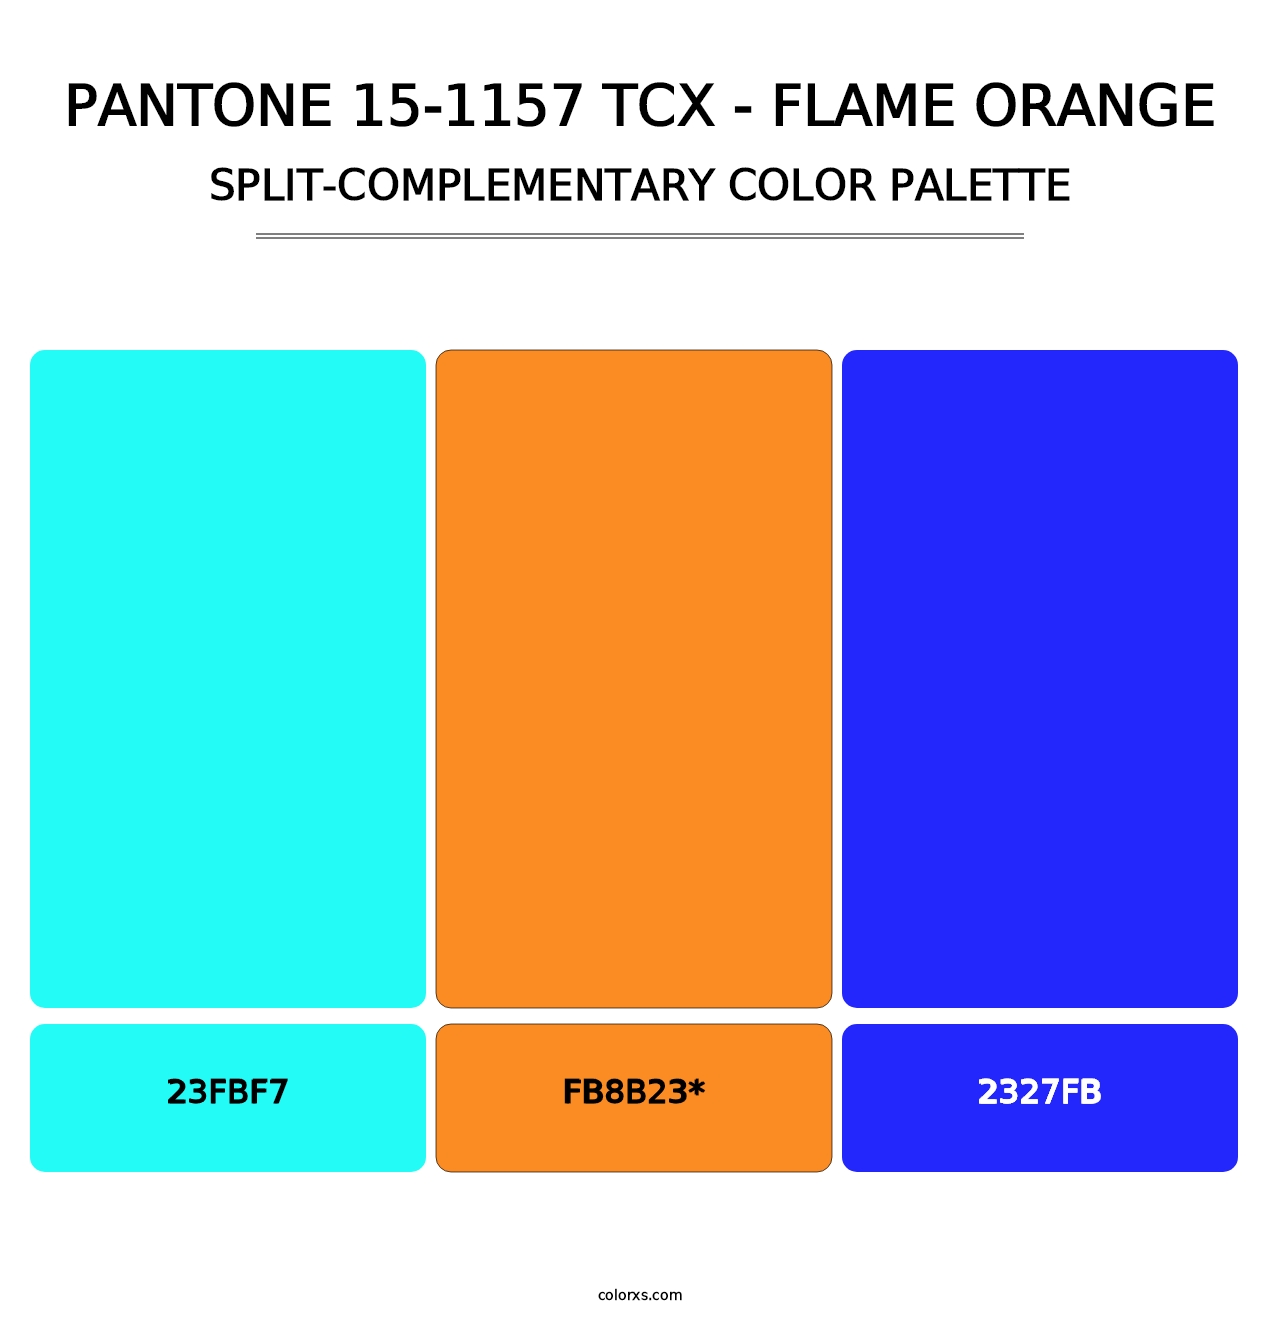 PANTONE 15-1157 TCX - Flame Orange - Split-Complementary Color Palette